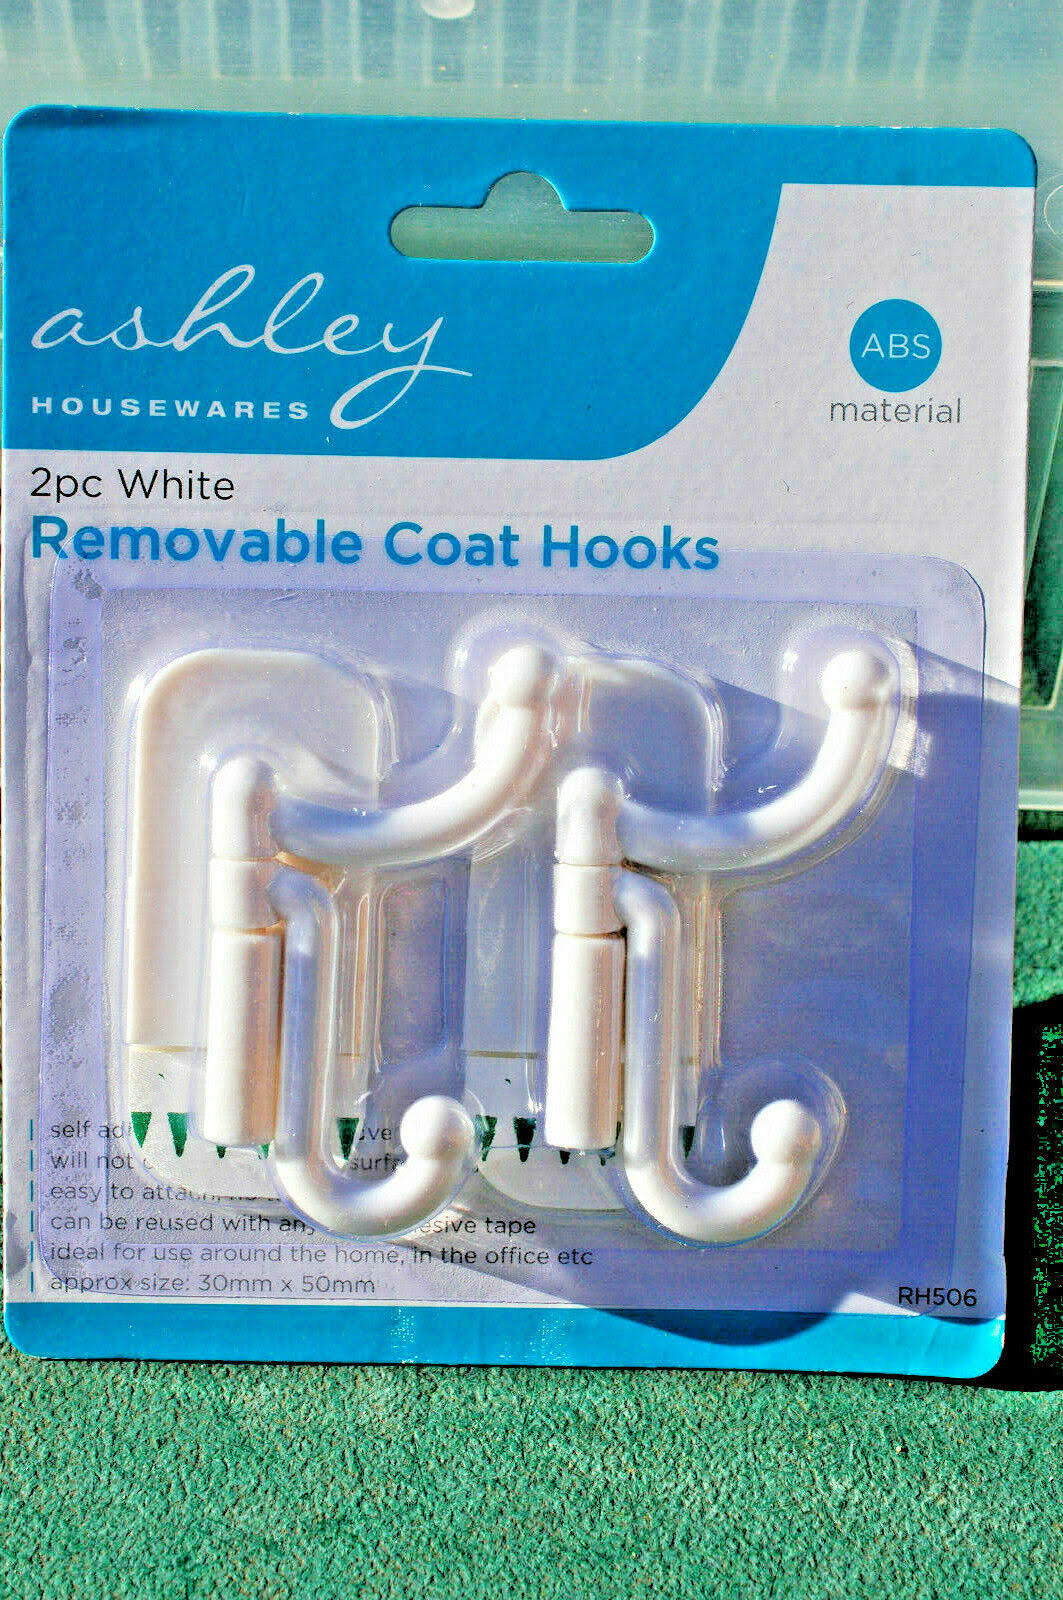 Ashley 2pc White Removable Coat Hooks